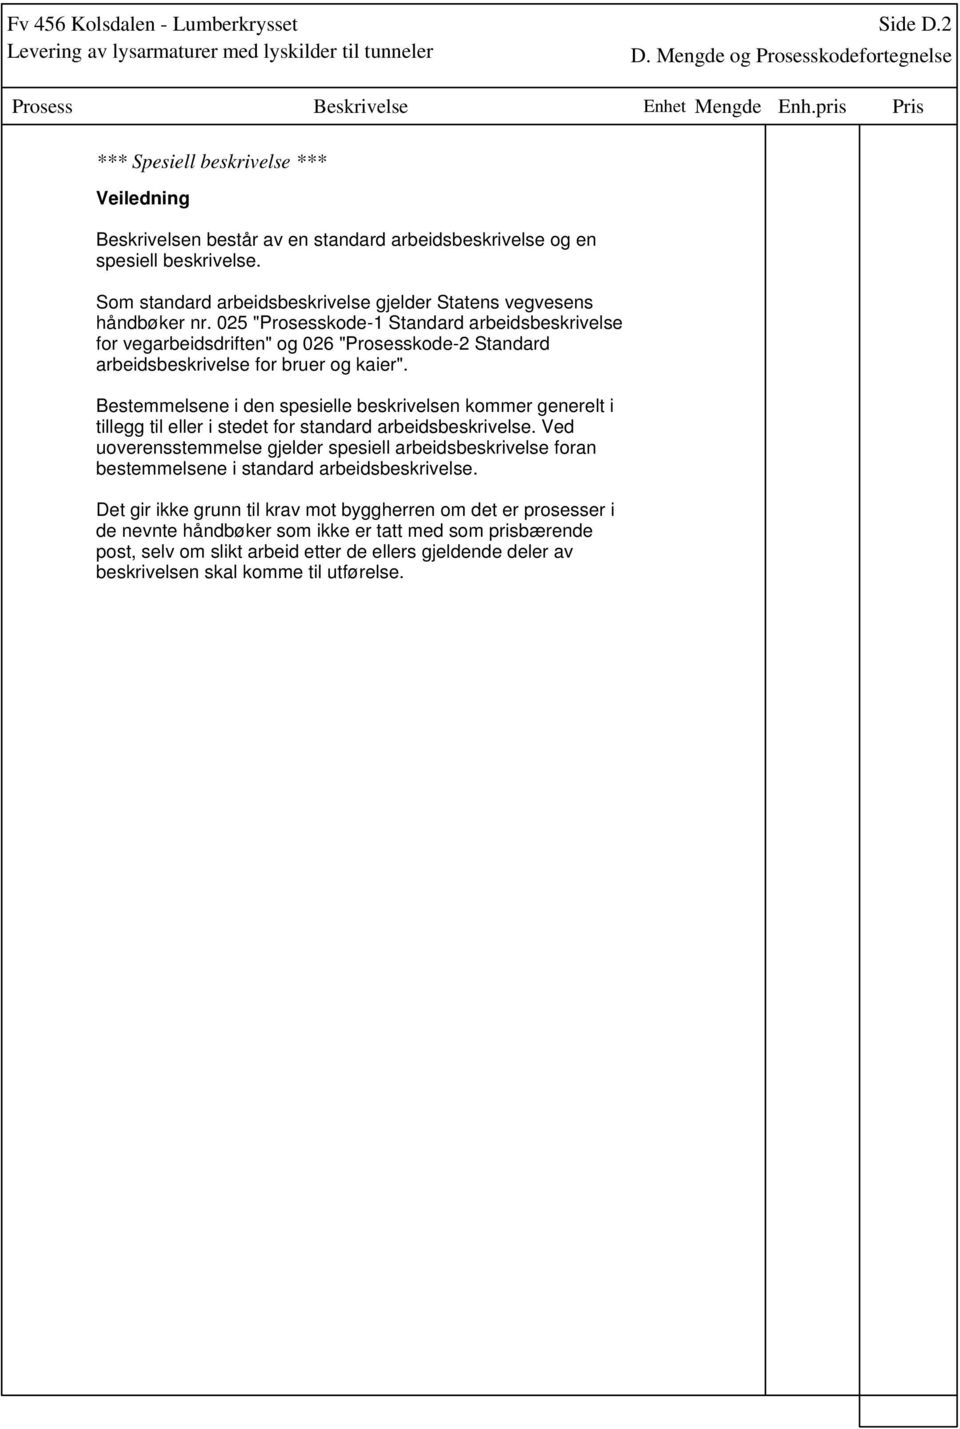 025 "Prosesskode-1 Standard arbeidsbeskrivelse for vegarbeidsdriften" og 026 "Prosesskode-2 Standard arbeidsbeskrivelse for bruer og kaier".